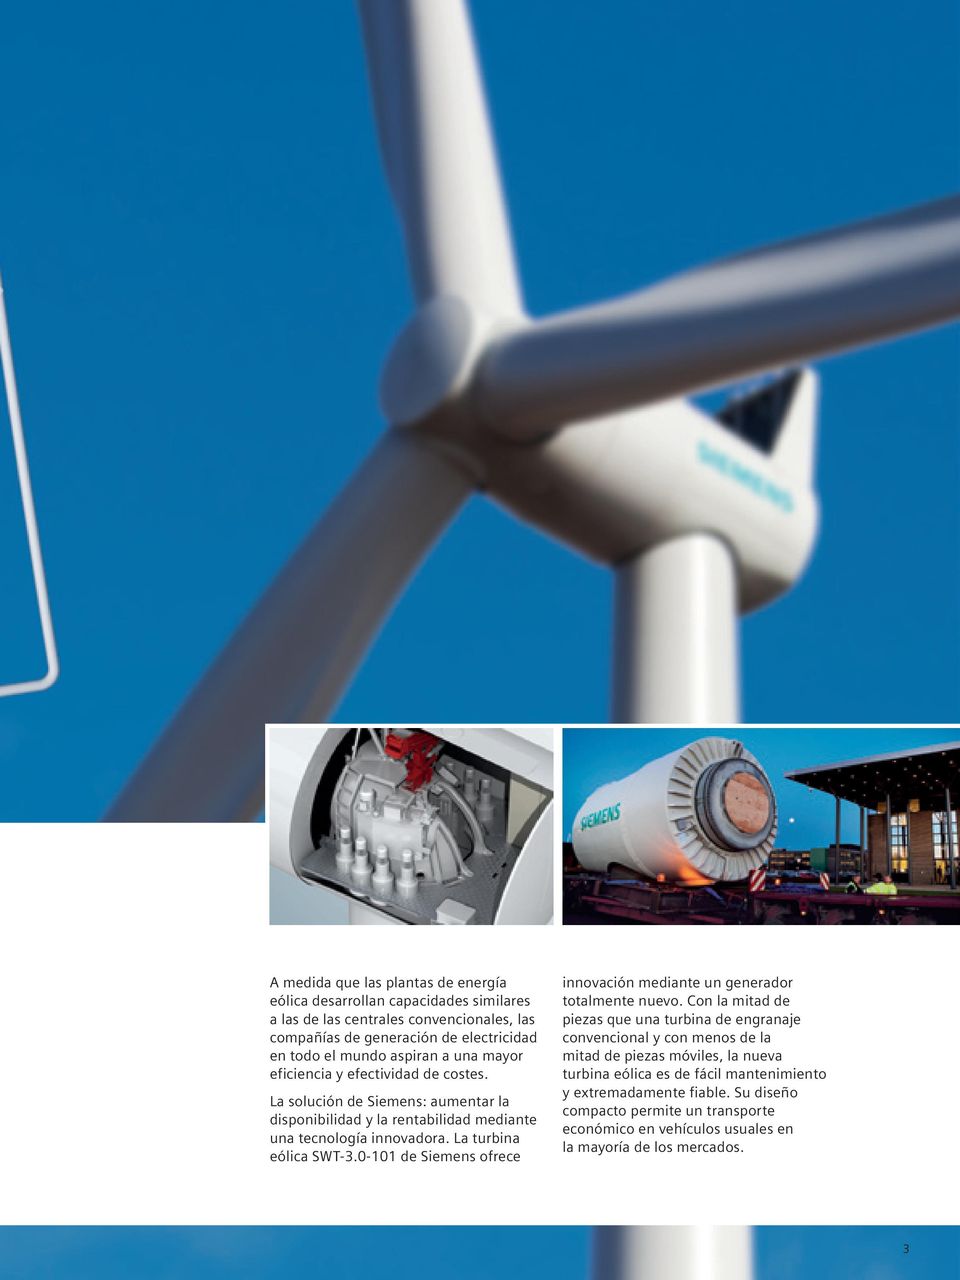 La turbina eólica SWT-3.0-101 de Siemens ofrece innovación mediante un generador totalmente nuevo.